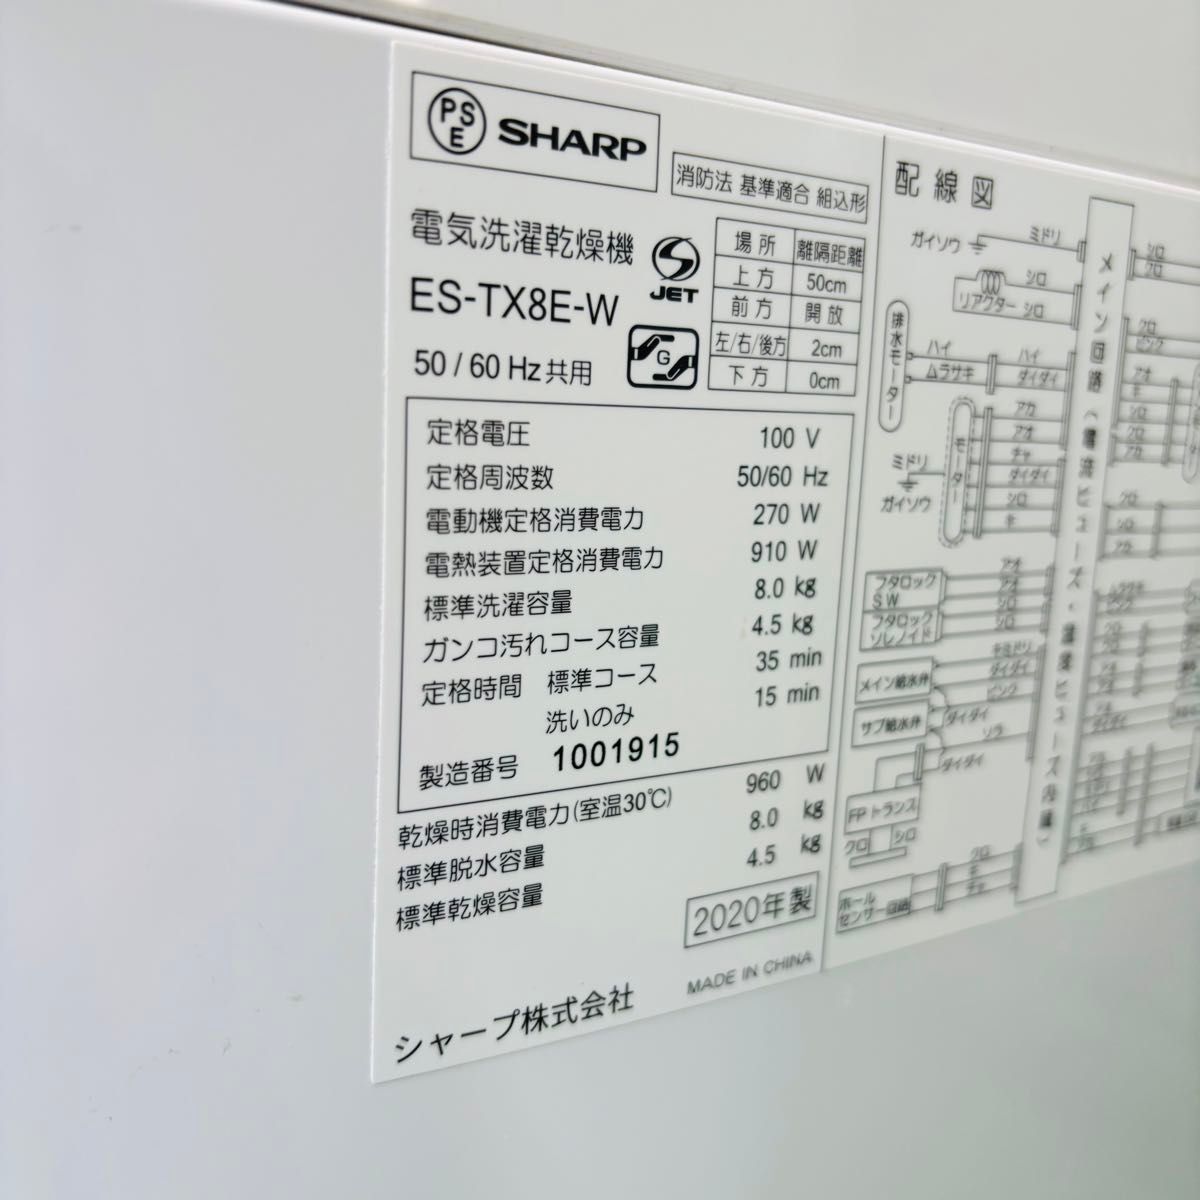 2020年製 8.0kg 洗濯乾燥機 タテ型式 SHARP【地域限定配送無料】